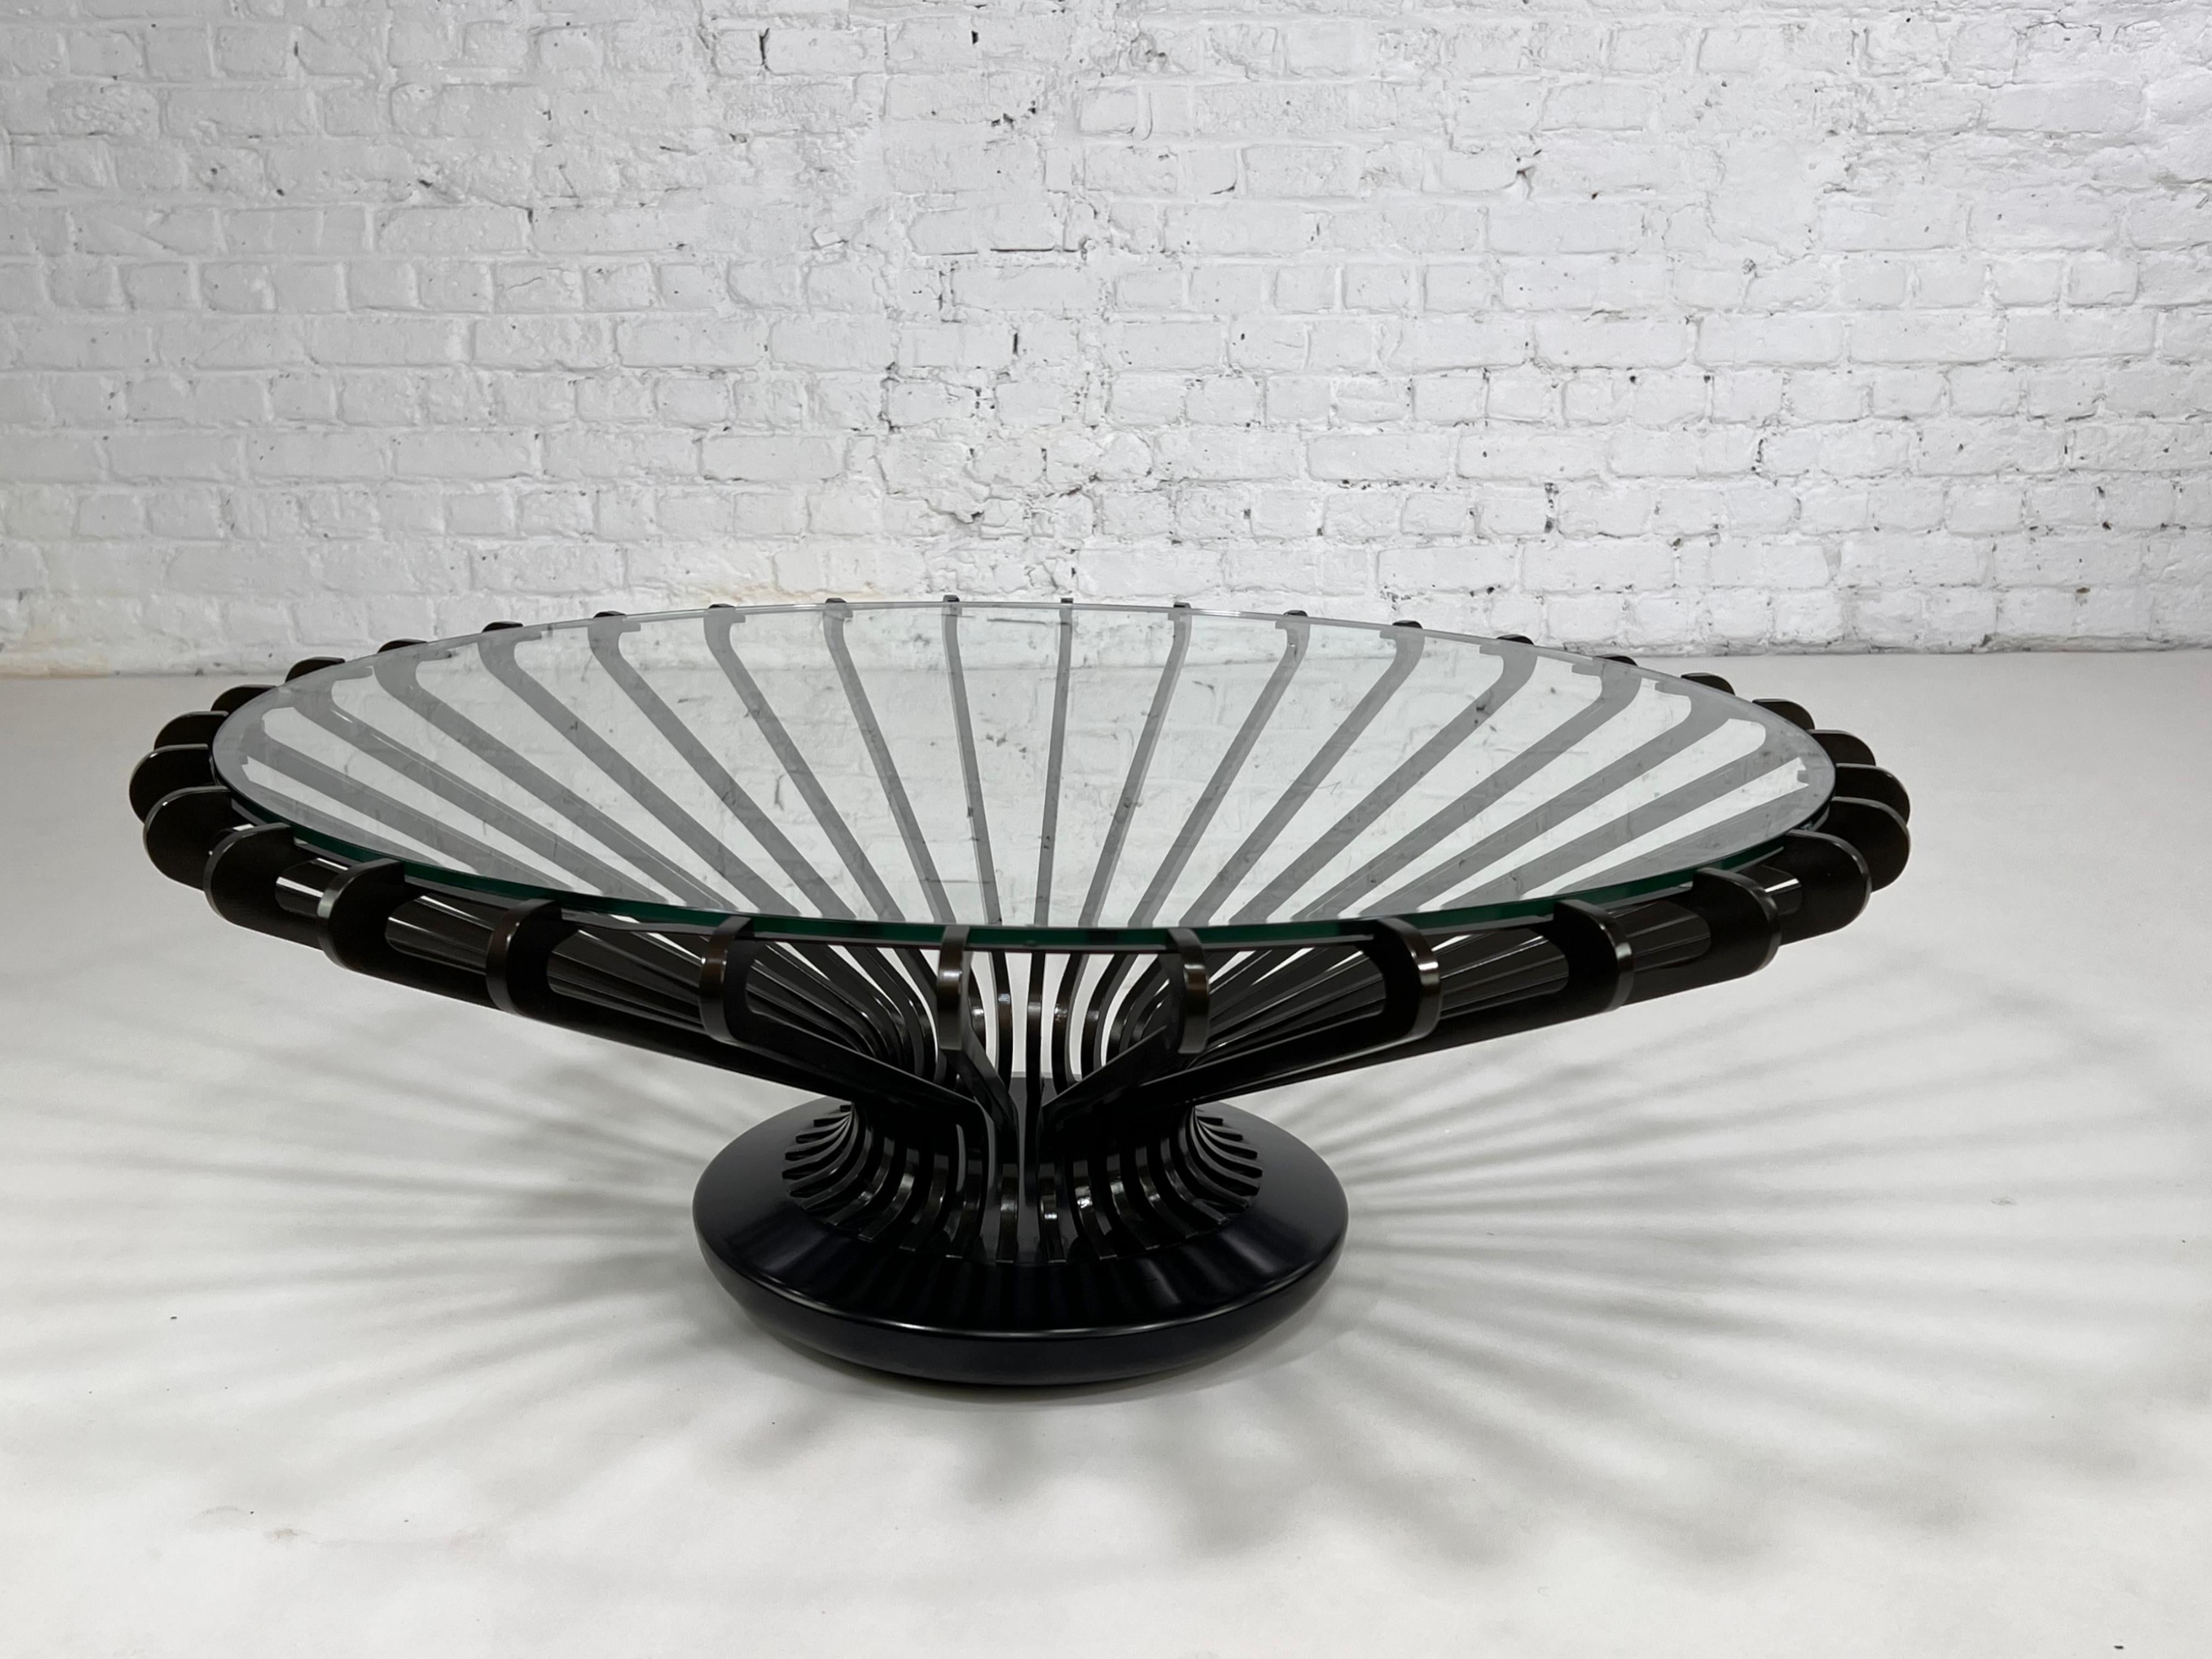 Mesa de centro redonda de metal y cristal, de diseño moderno italiano, con estructura metálica y aérea negra y tapa redonda de cristal.